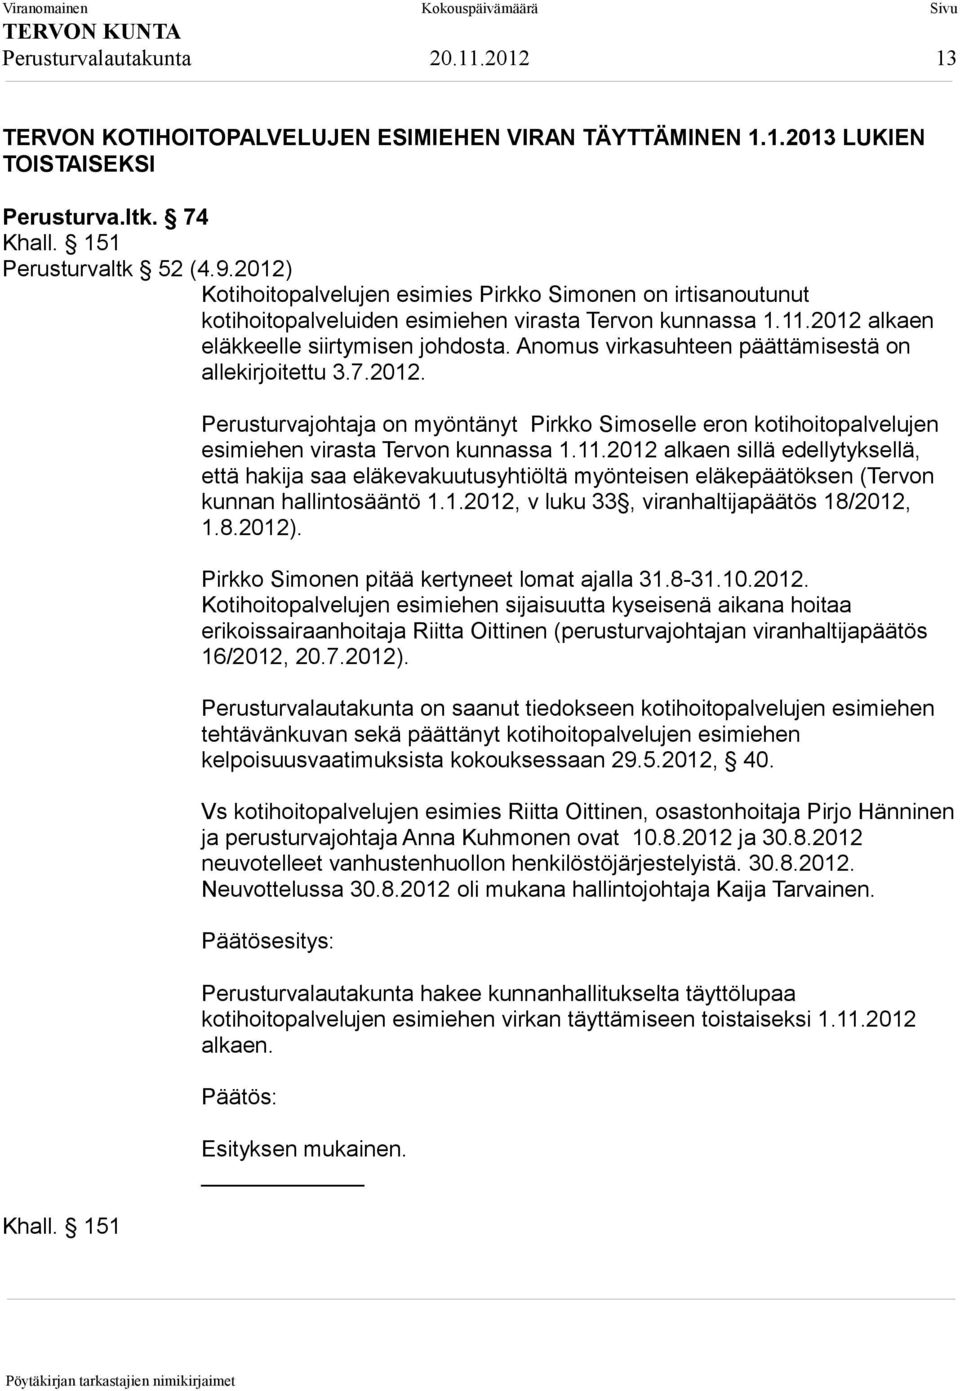 Anomus virkasuhteen päättämisestä on allekirjoitettu 3.7.2012. Khall. 151 Perusturvajohtaja on myöntänyt Pirkko Simoselle eron kotihoitopalvelujen esimiehen virasta Tervon kunnassa 1.11.